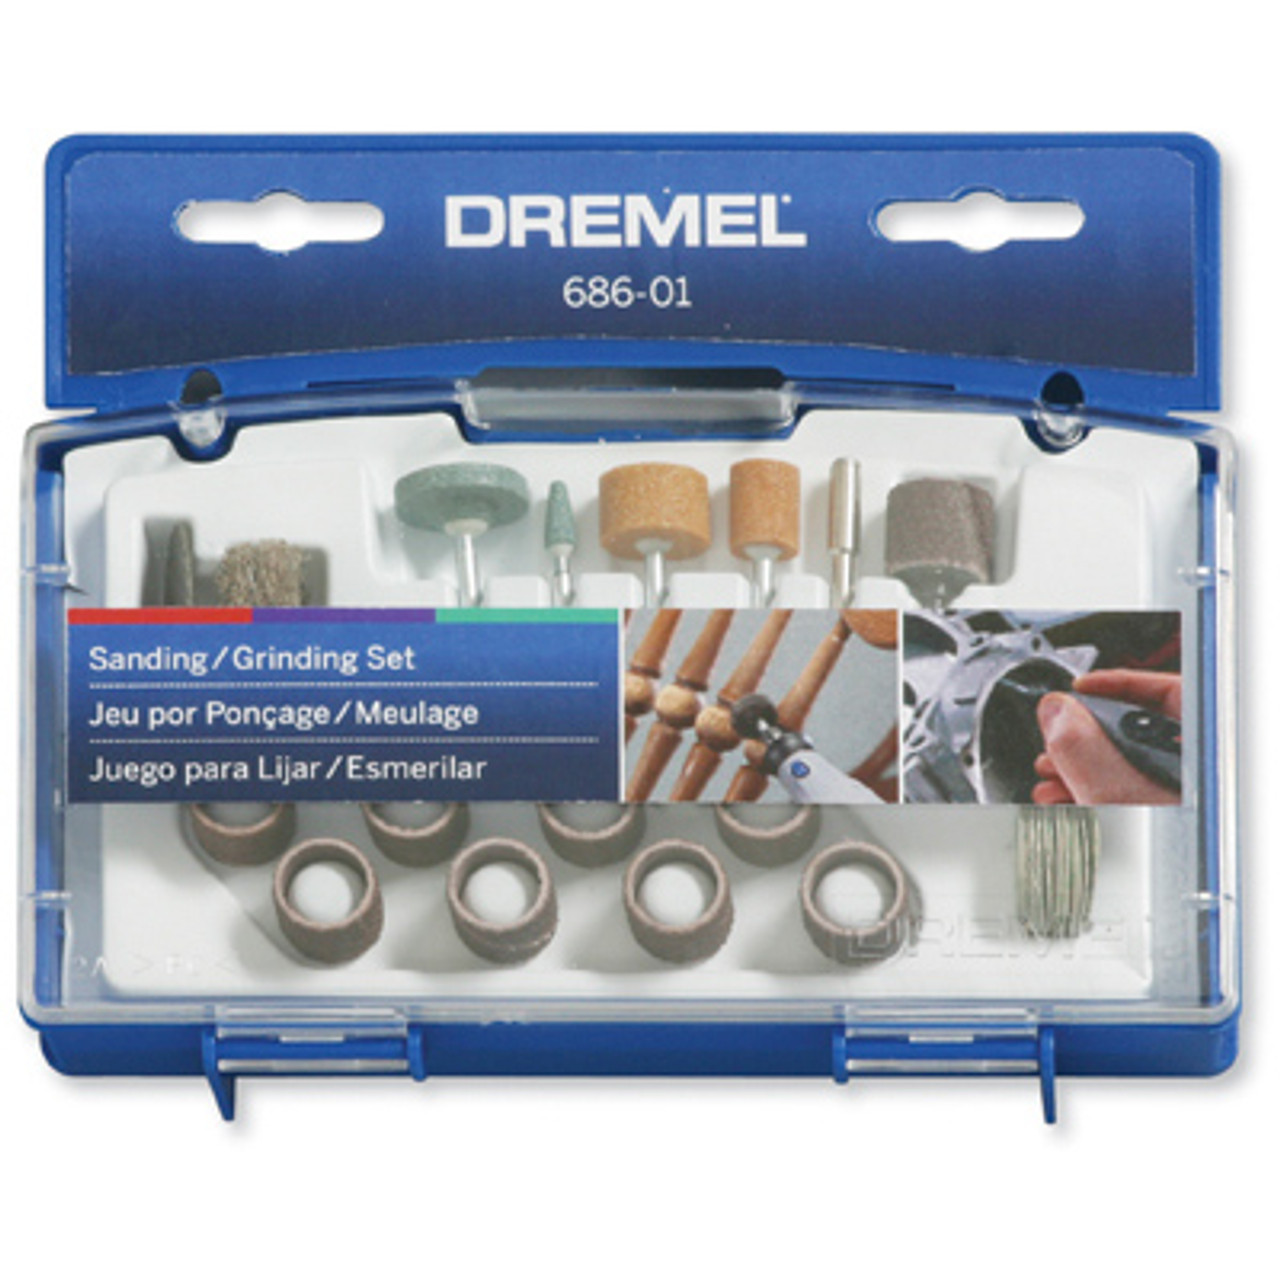 Dremel Accessory Kit 686-01 - DRE686 - Penn Tool Co., Inc